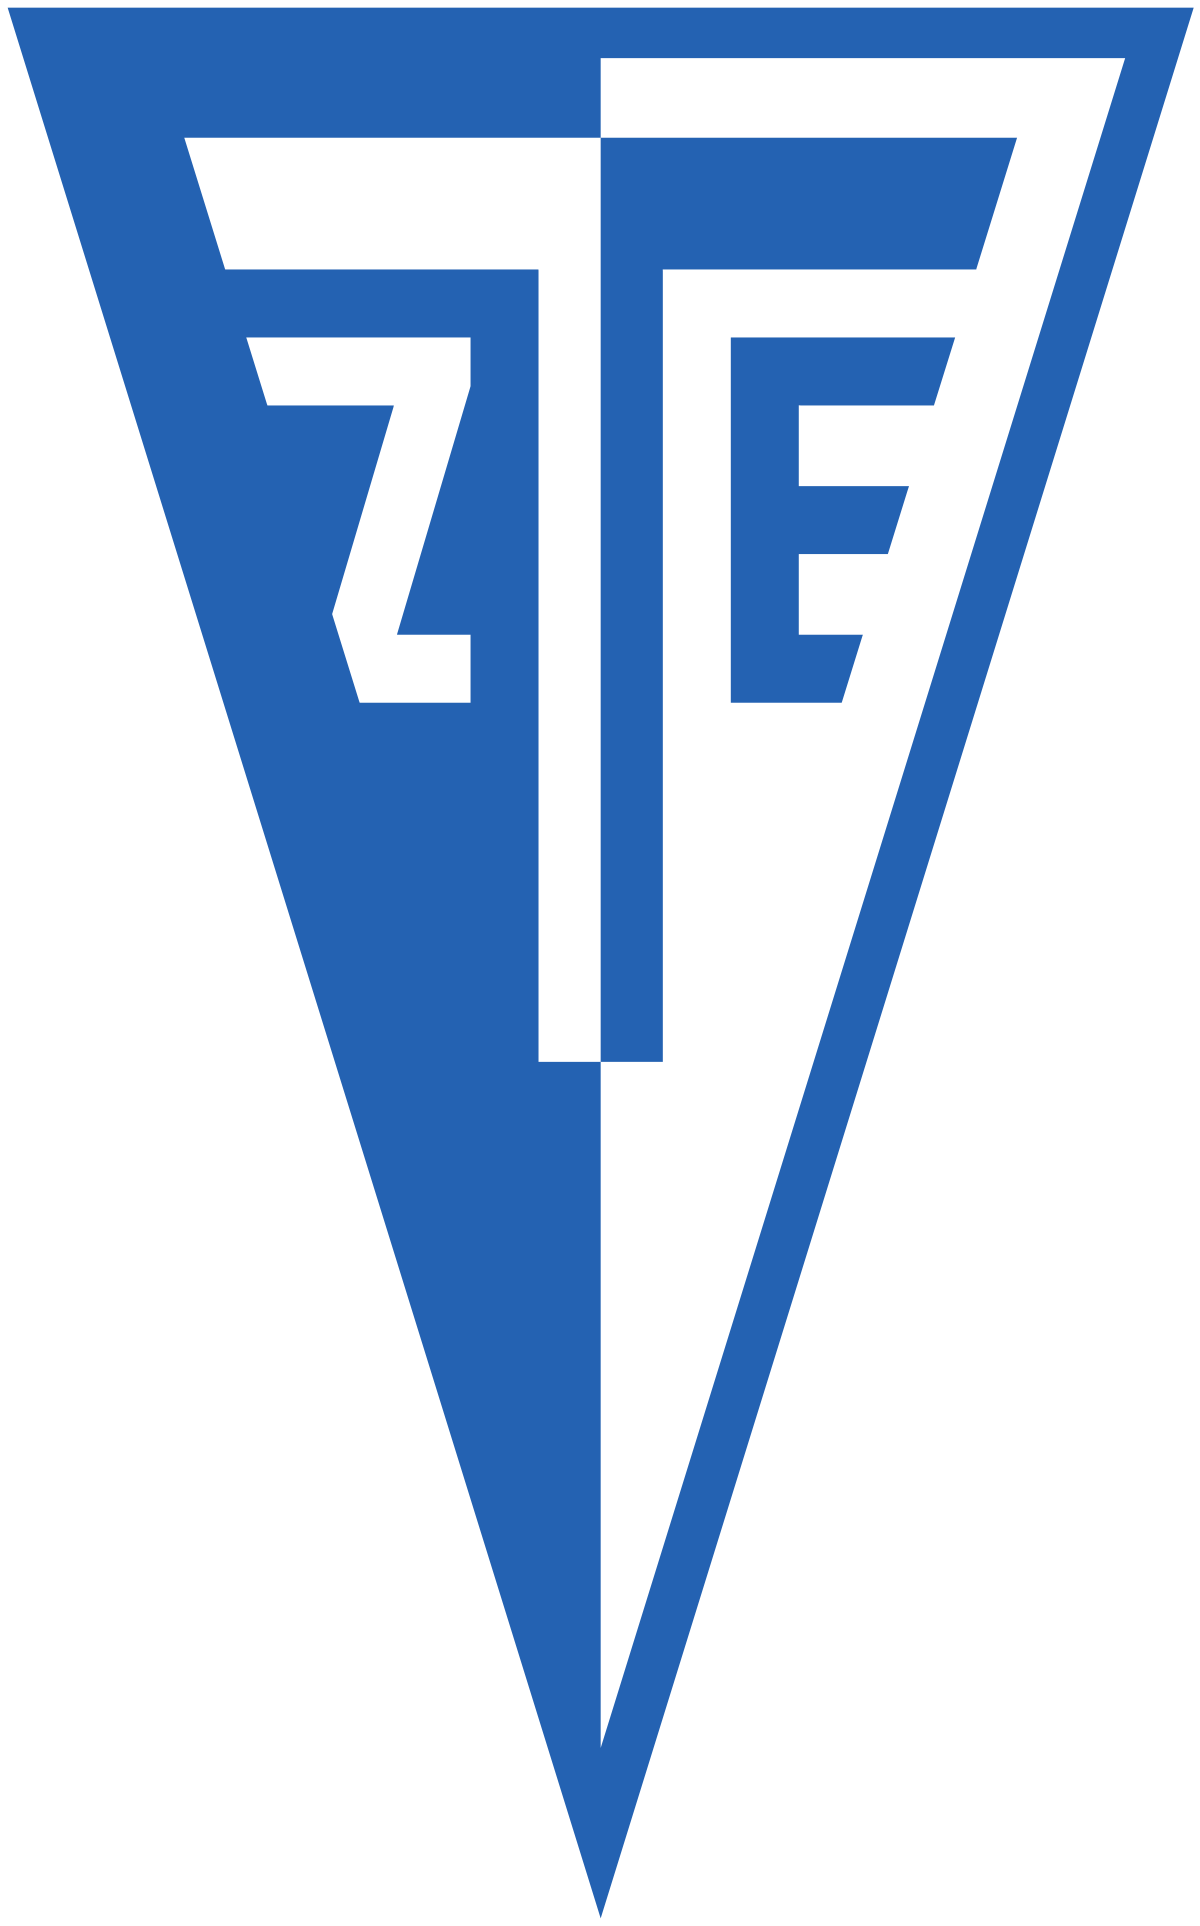 logo ZTE FC (29337)